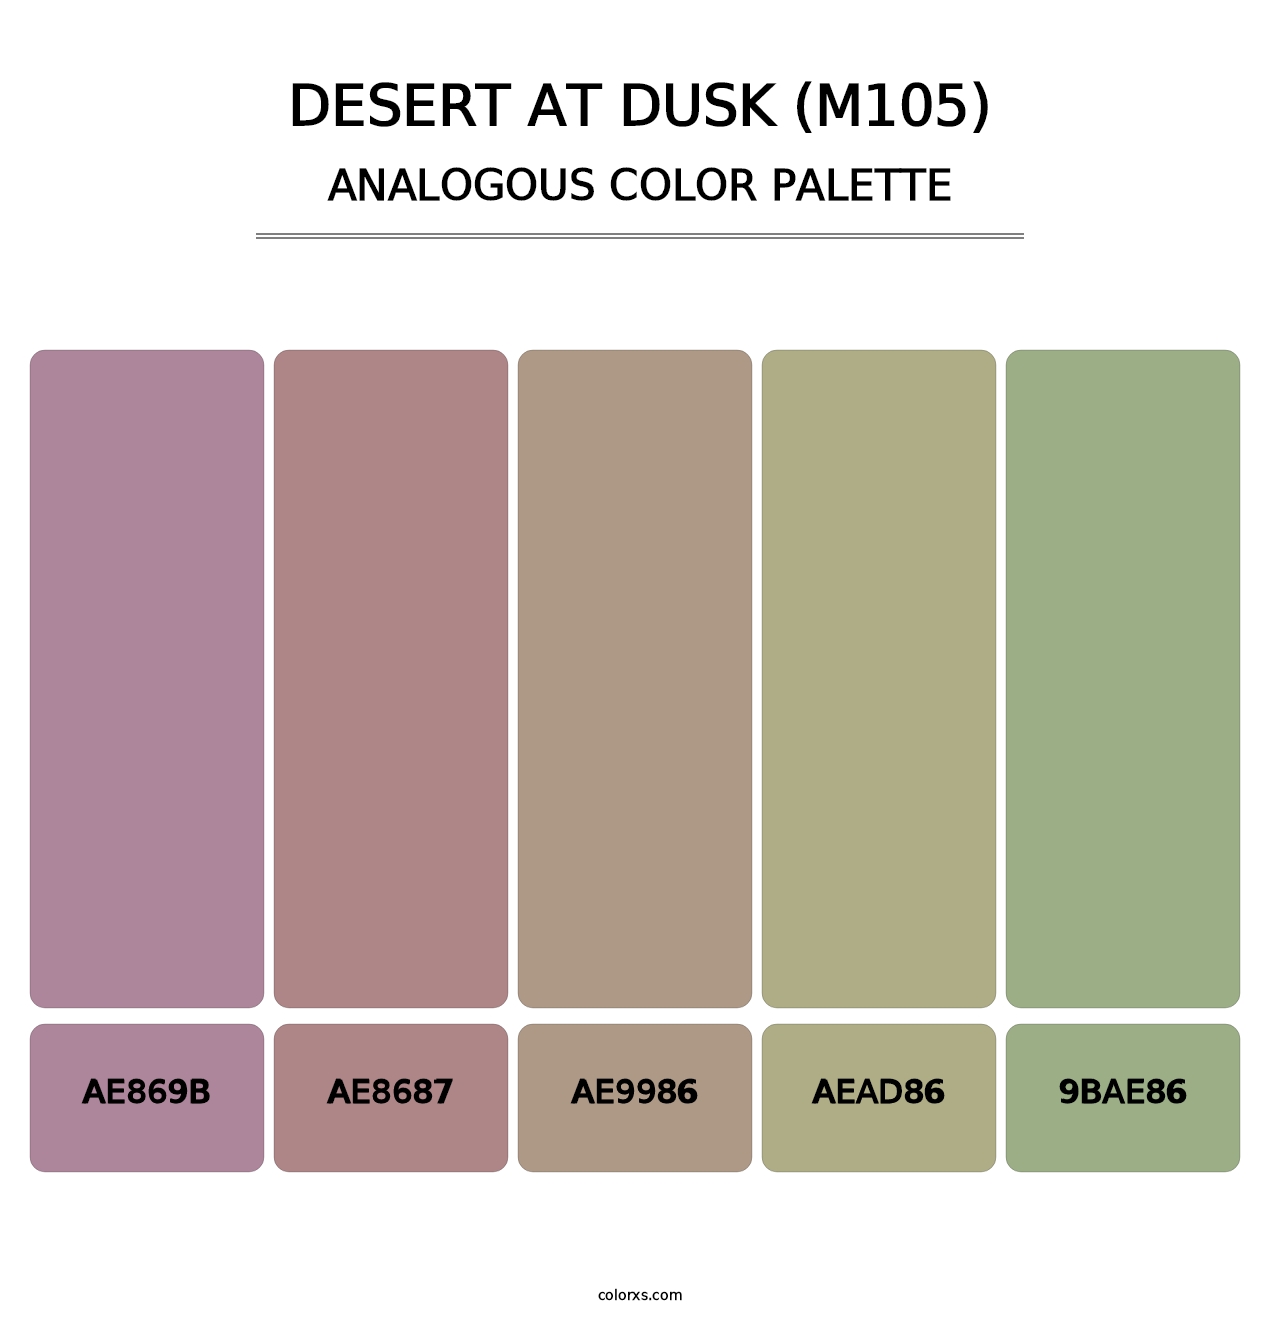 Desert at Dusk (M105) - Analogous Color Palette